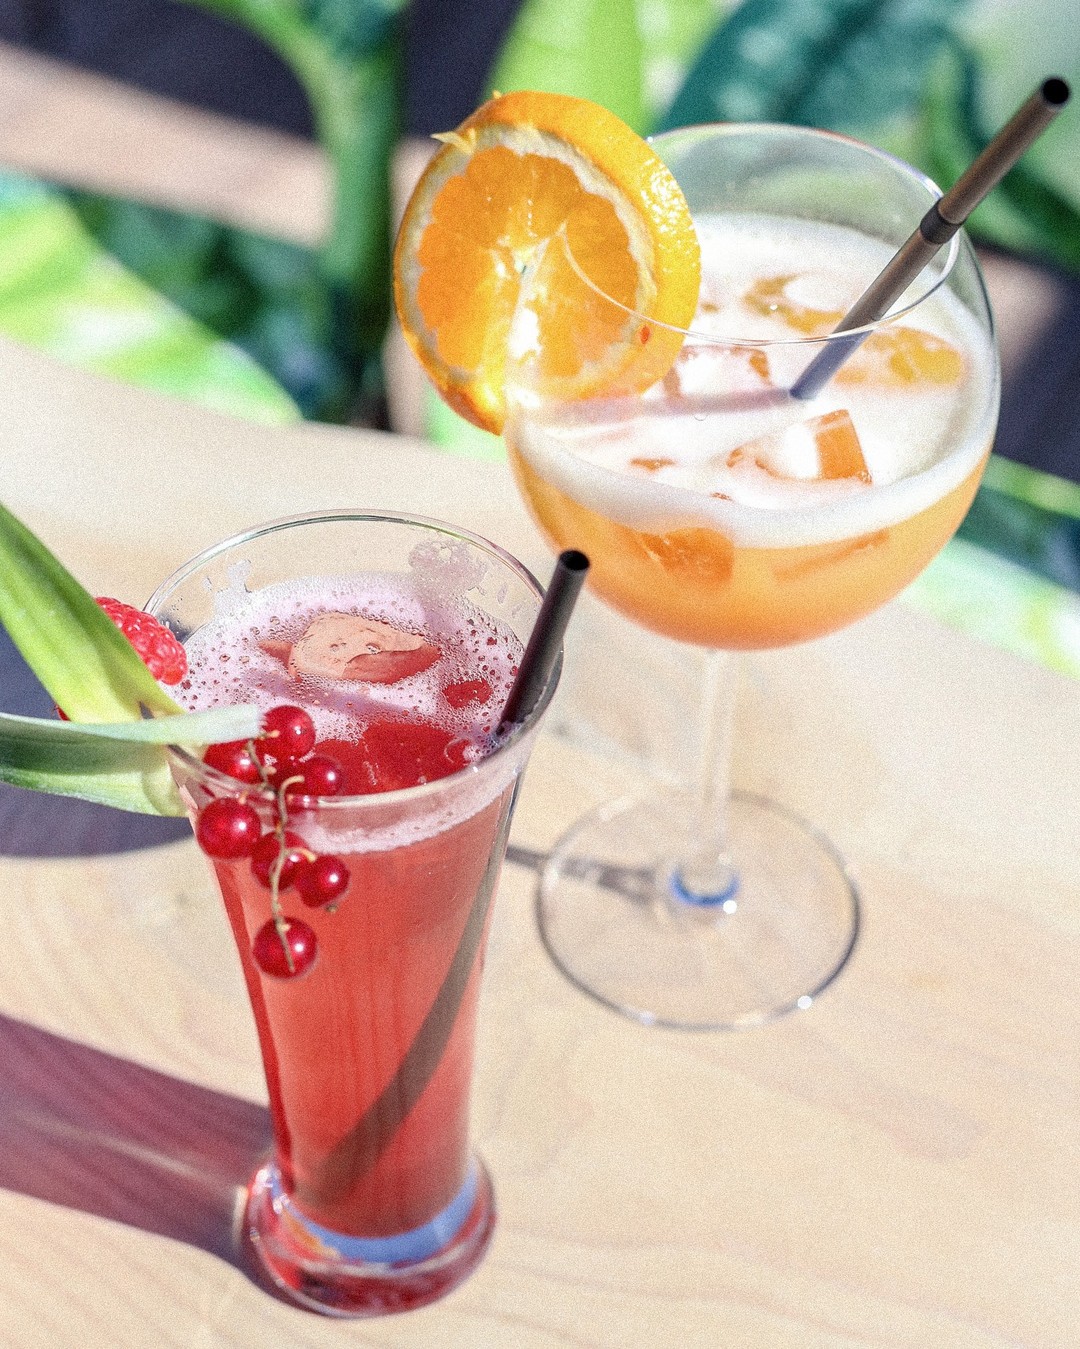 Un petit #cocktail les pieds dans le sable ? 😎
_
Boulevard de la Croisette, Cannes
04.93.43.67.05
contact@vegaluna.fr
www.vegaluna.fr  #food #restaurant #cannes #plage #frenchriviera #summervibes #drinks